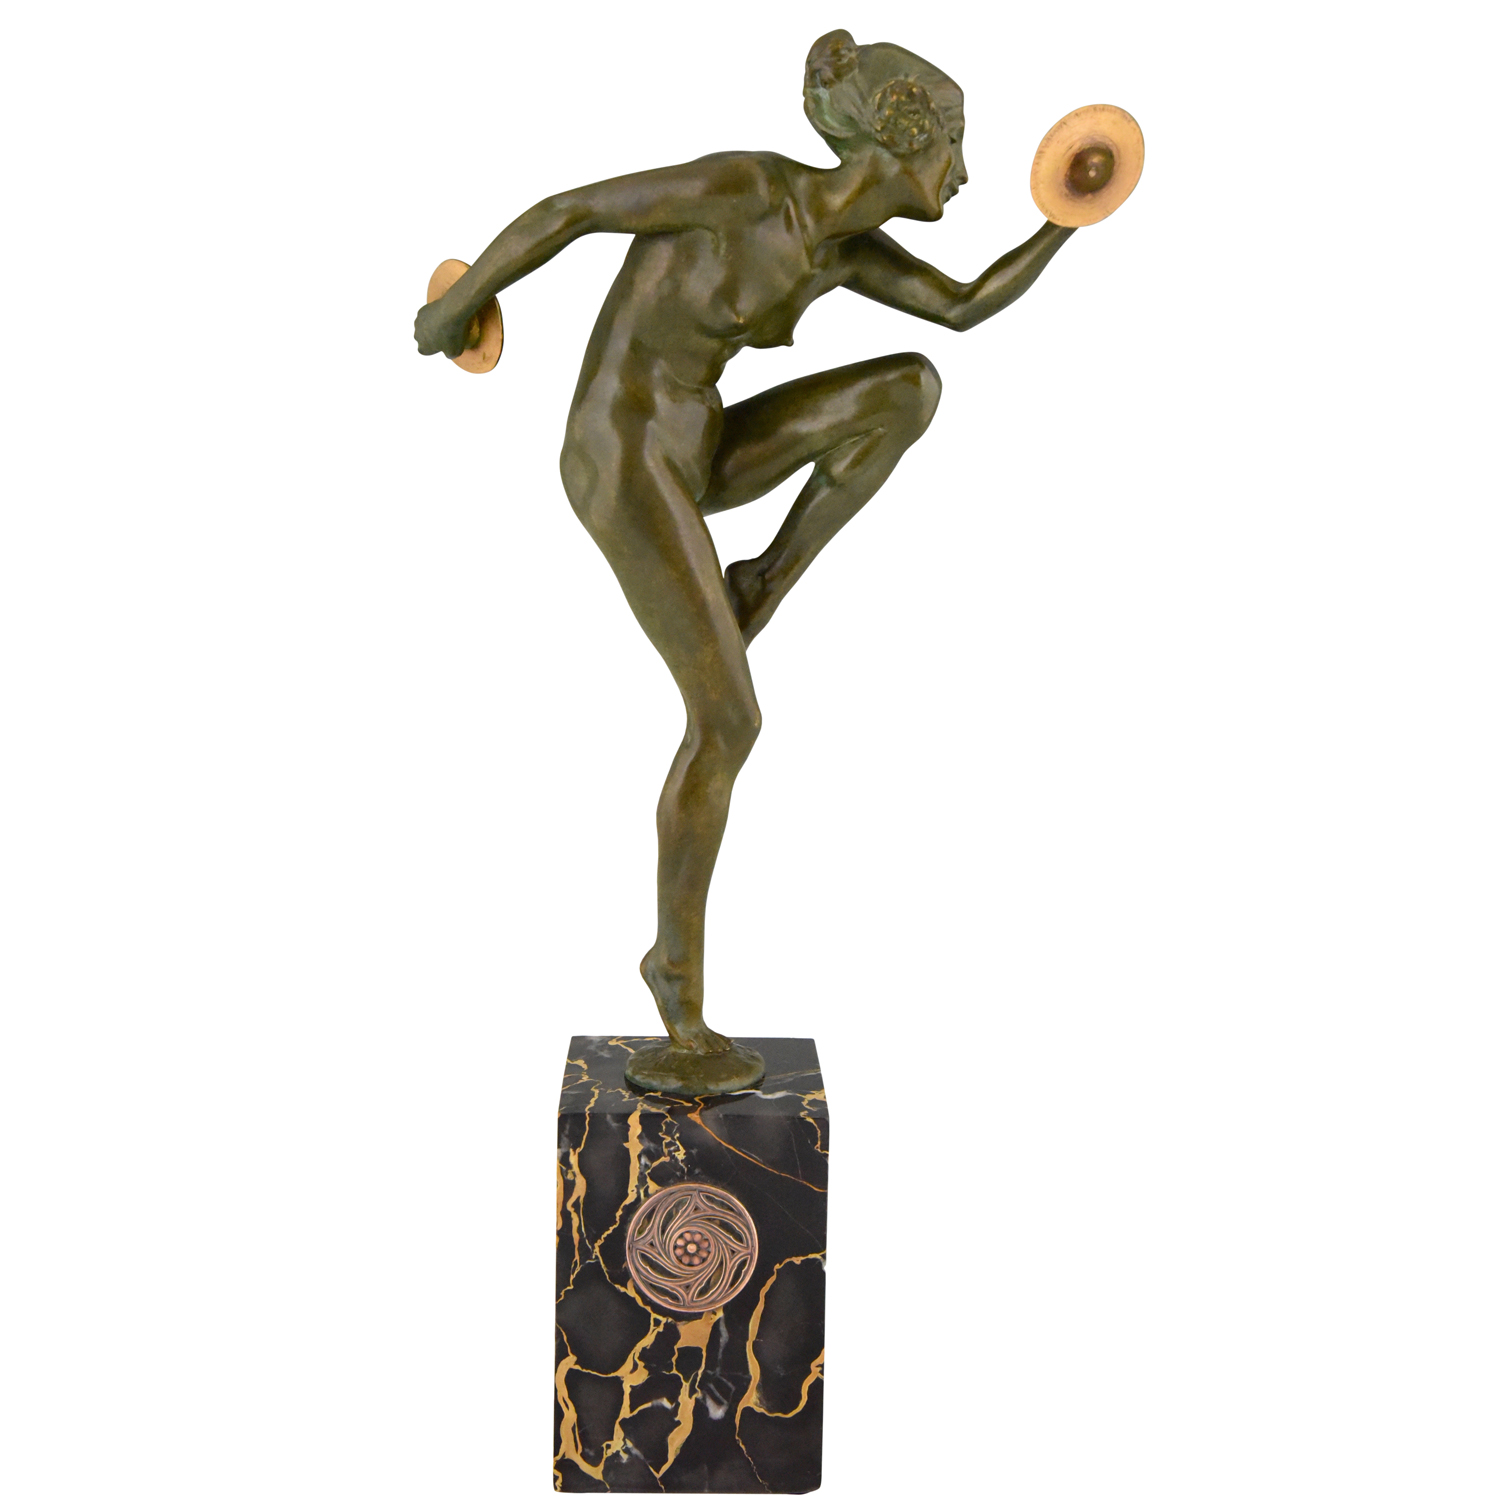 Art Deco bronzen sculptuur naakte danseres met cimbalen